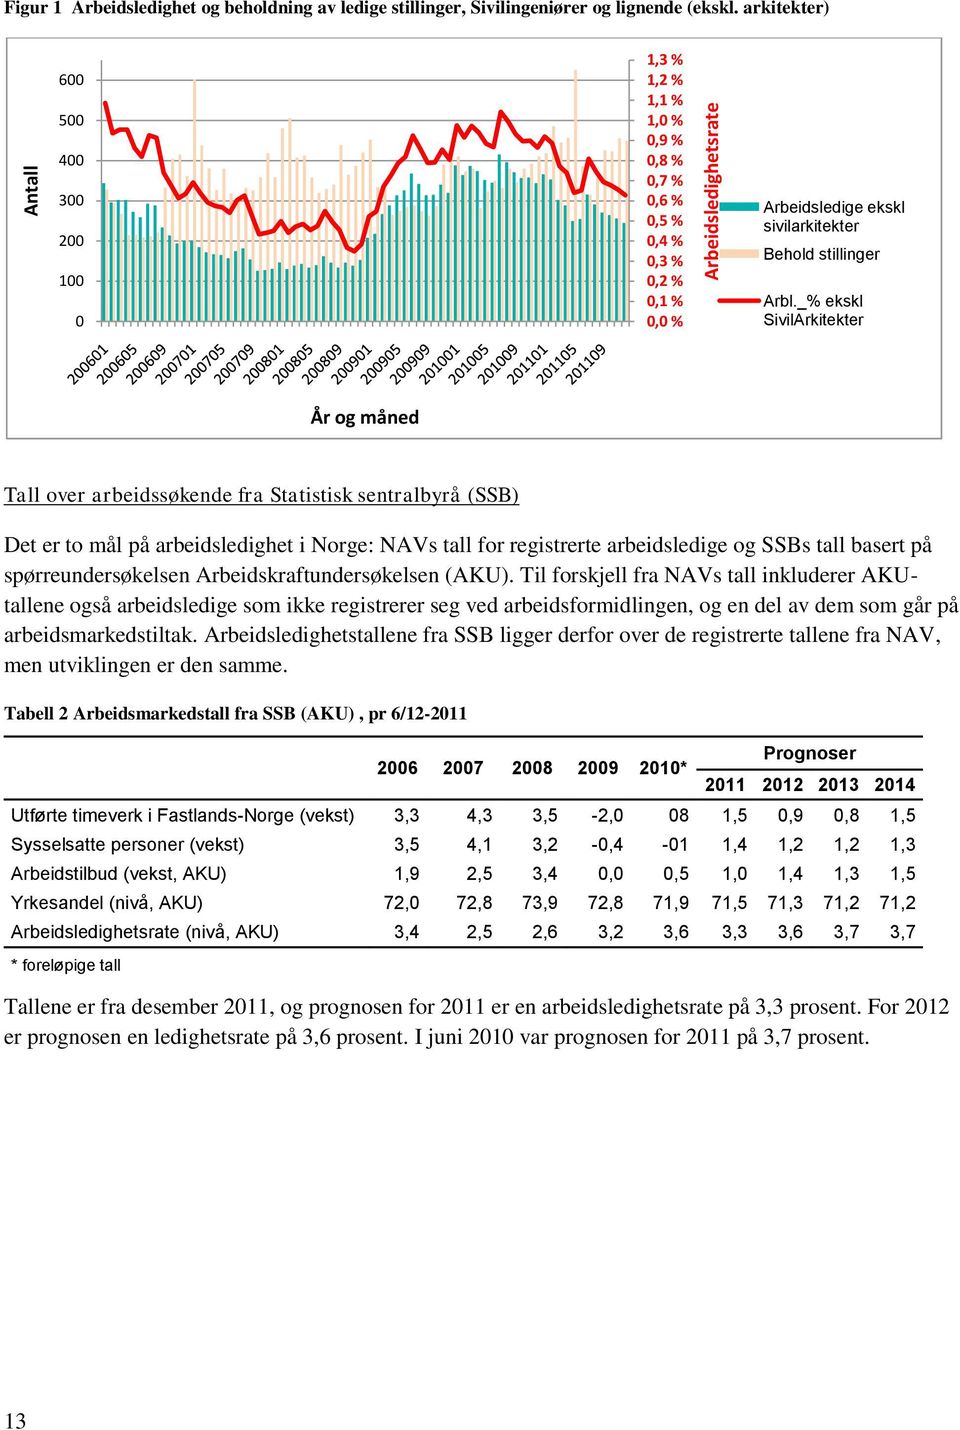 _% ekskl SivilArkitekter År og måned Tall over arbeidssøkende fra Statistisk sentralbyrå (SSB) Det er to mål på arbeidsledighet i Norge: NAVs tall for registrerte arbeidsledige og SSBs tall basert på